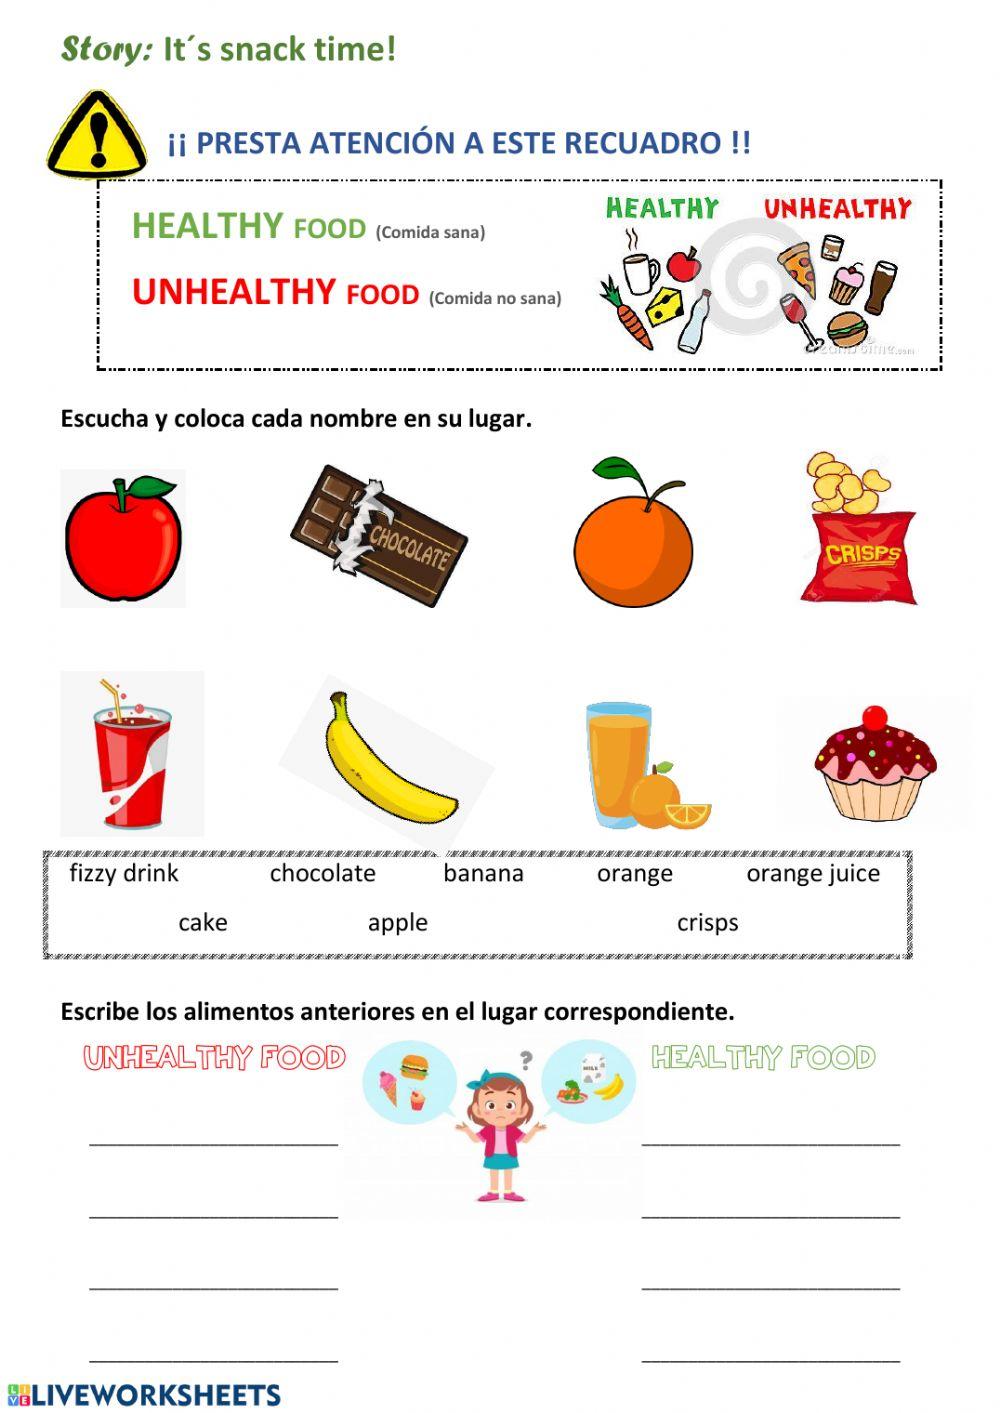 Healthy unhealthy food - 